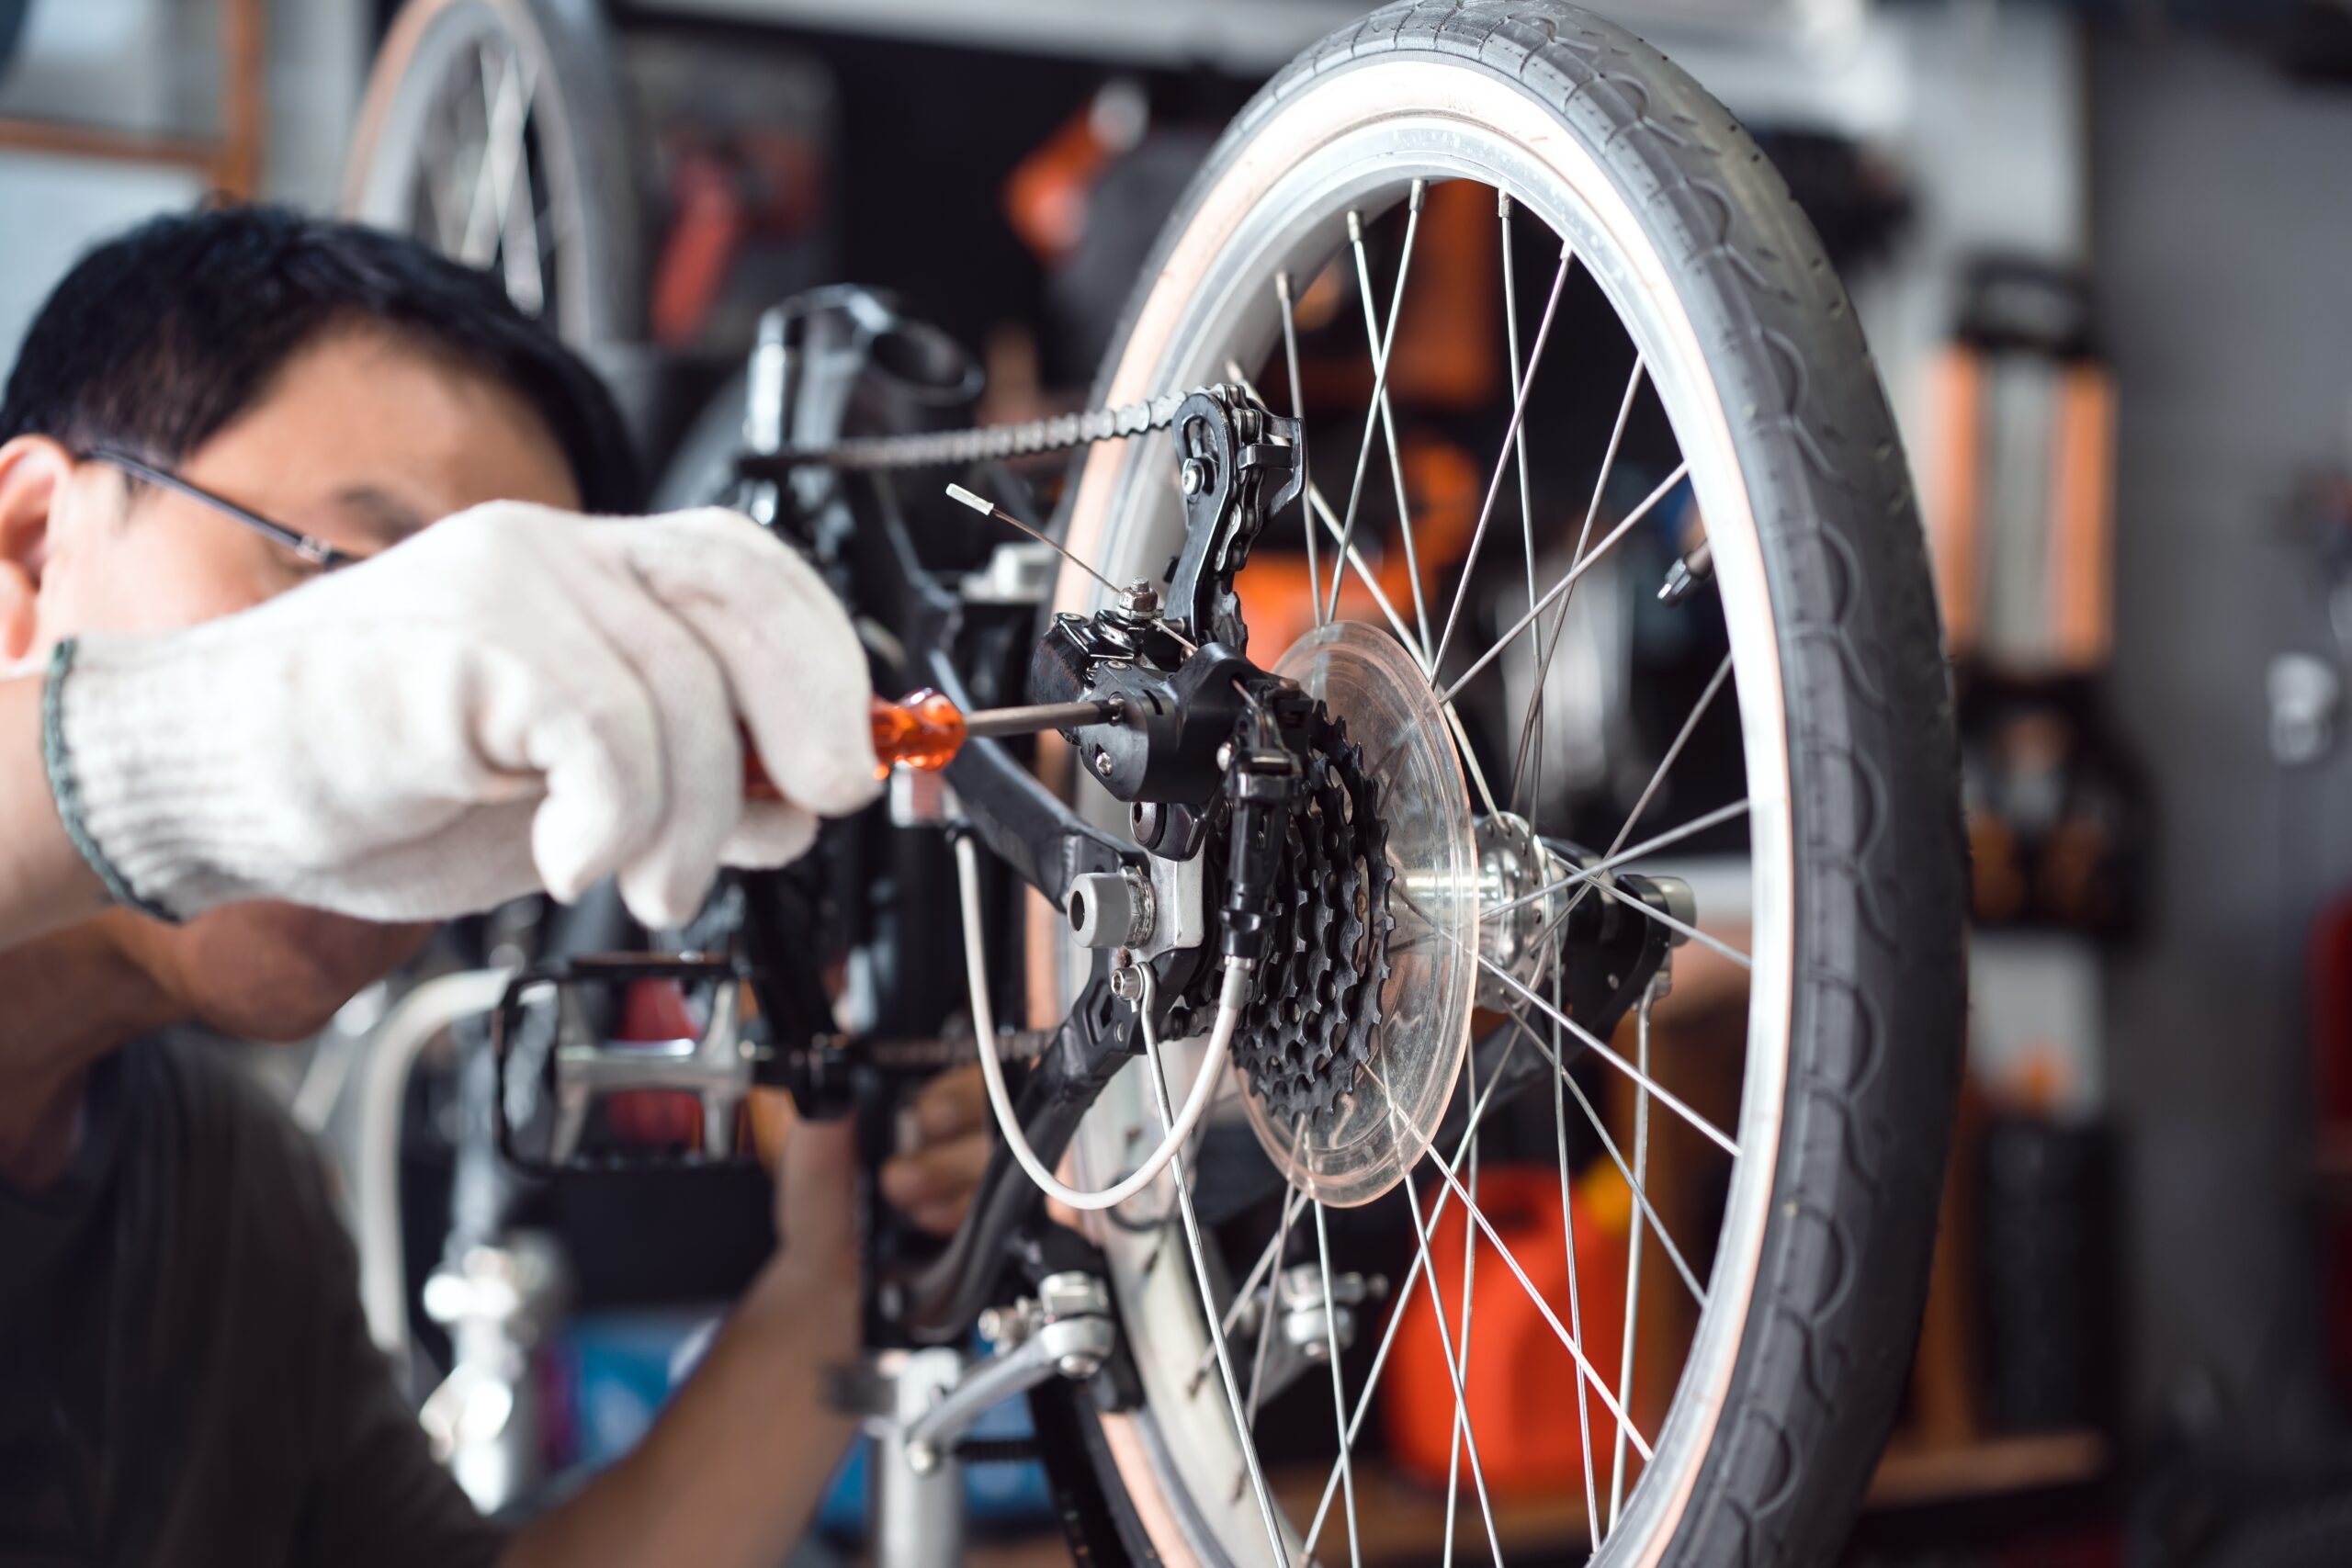 Bike,Mechanic,Adjust,Rear,Derailleur,And,Repair,Bicycle,In,Workshop.